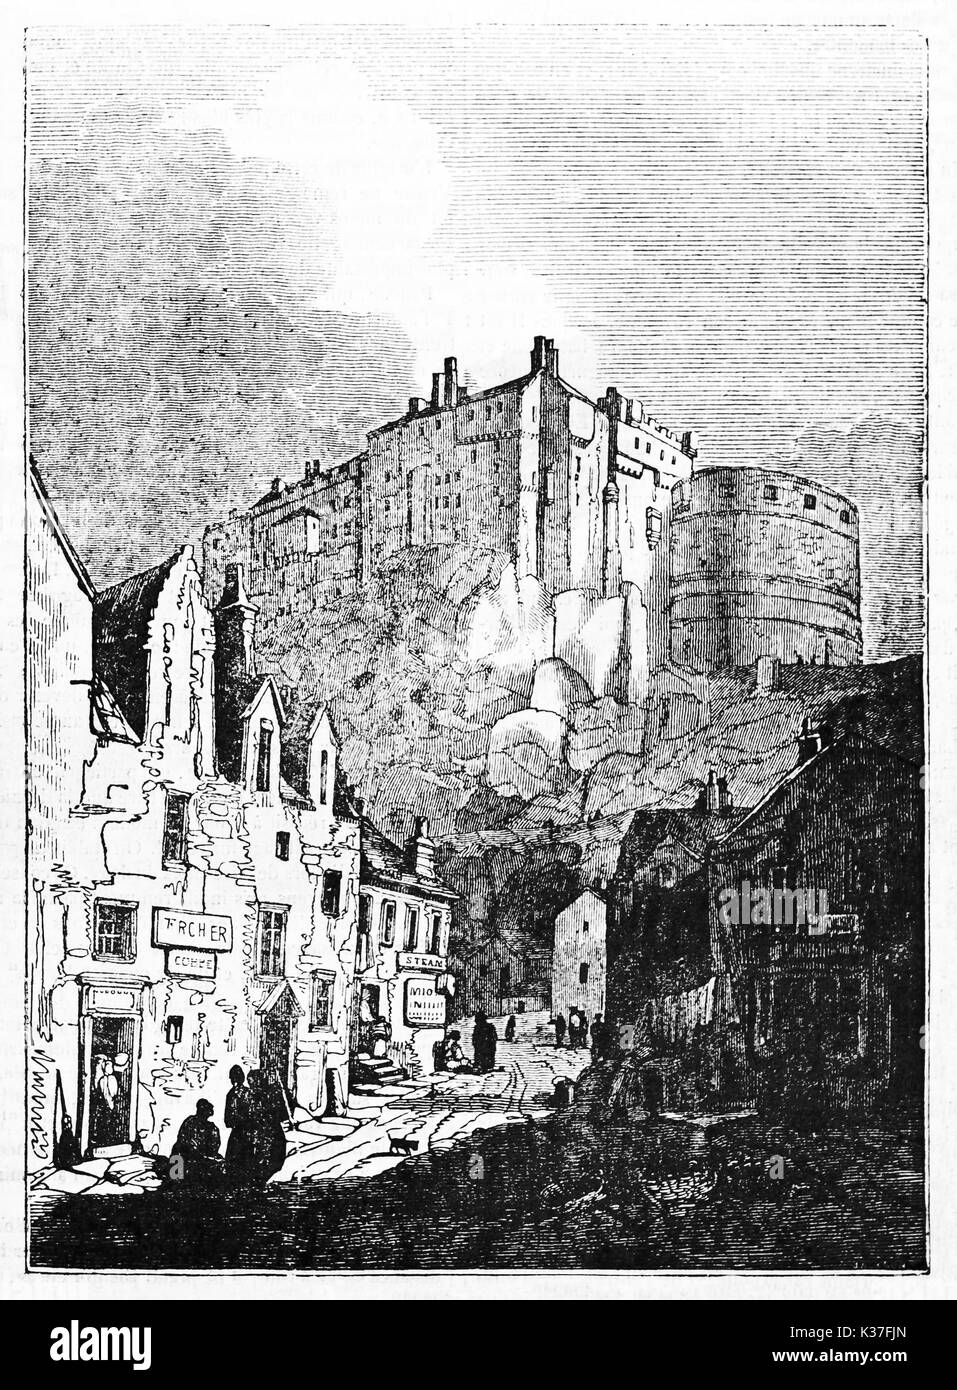 Ancienne cité médiévale ville écossaise avec le château d'Édimbourg en arrière-plan. Vieille Illustration d'auteur non identifié publié le magasin pittoresque Paris 1834 Banque D'Images